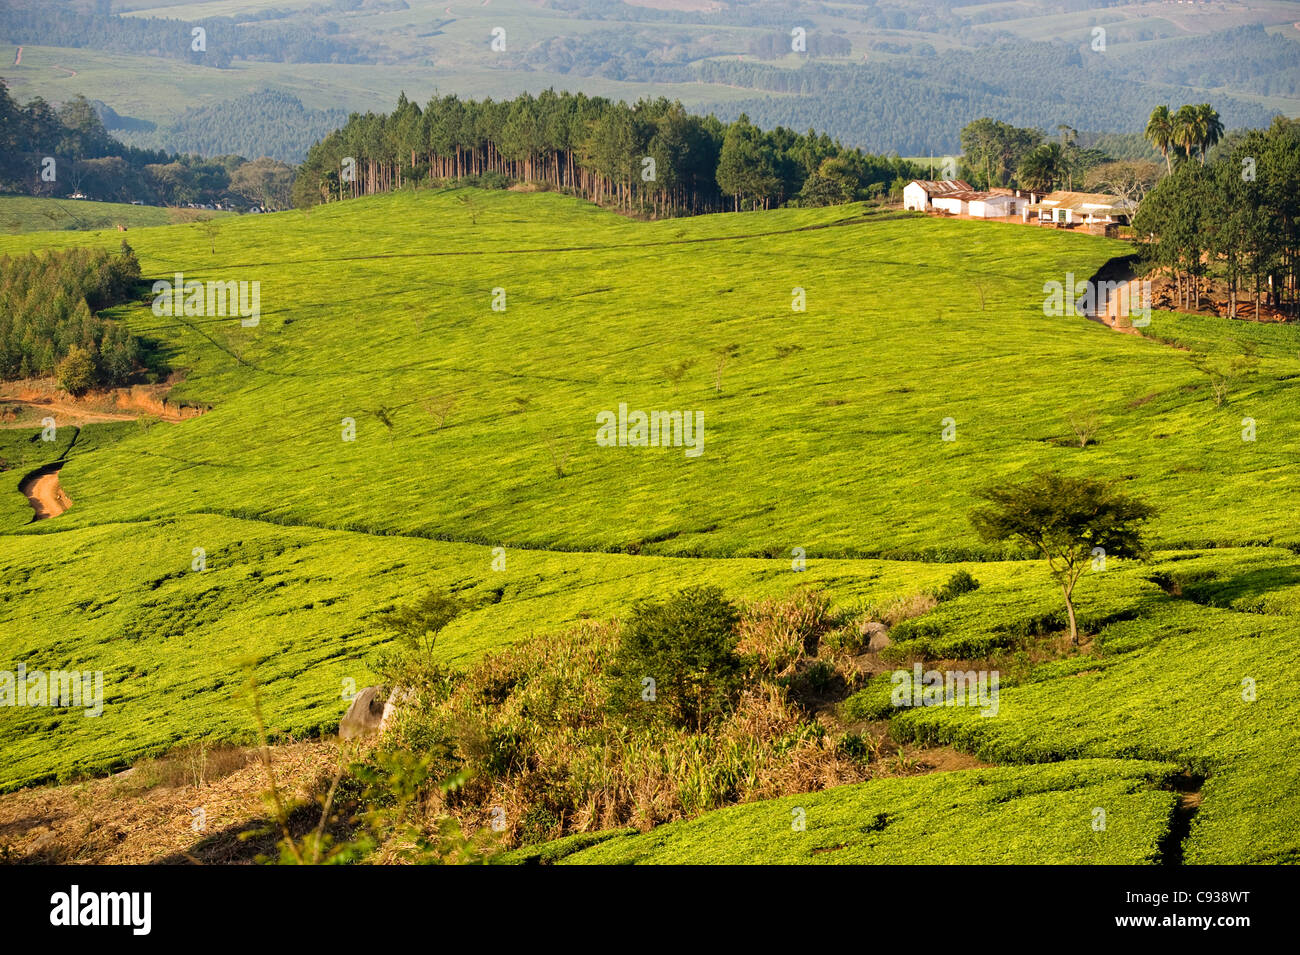 Malawi, Thyolo, Satemwa Tea Estate.  Tea bushes cloak the landscape at Satemwa Tea plantation. Stock Photo